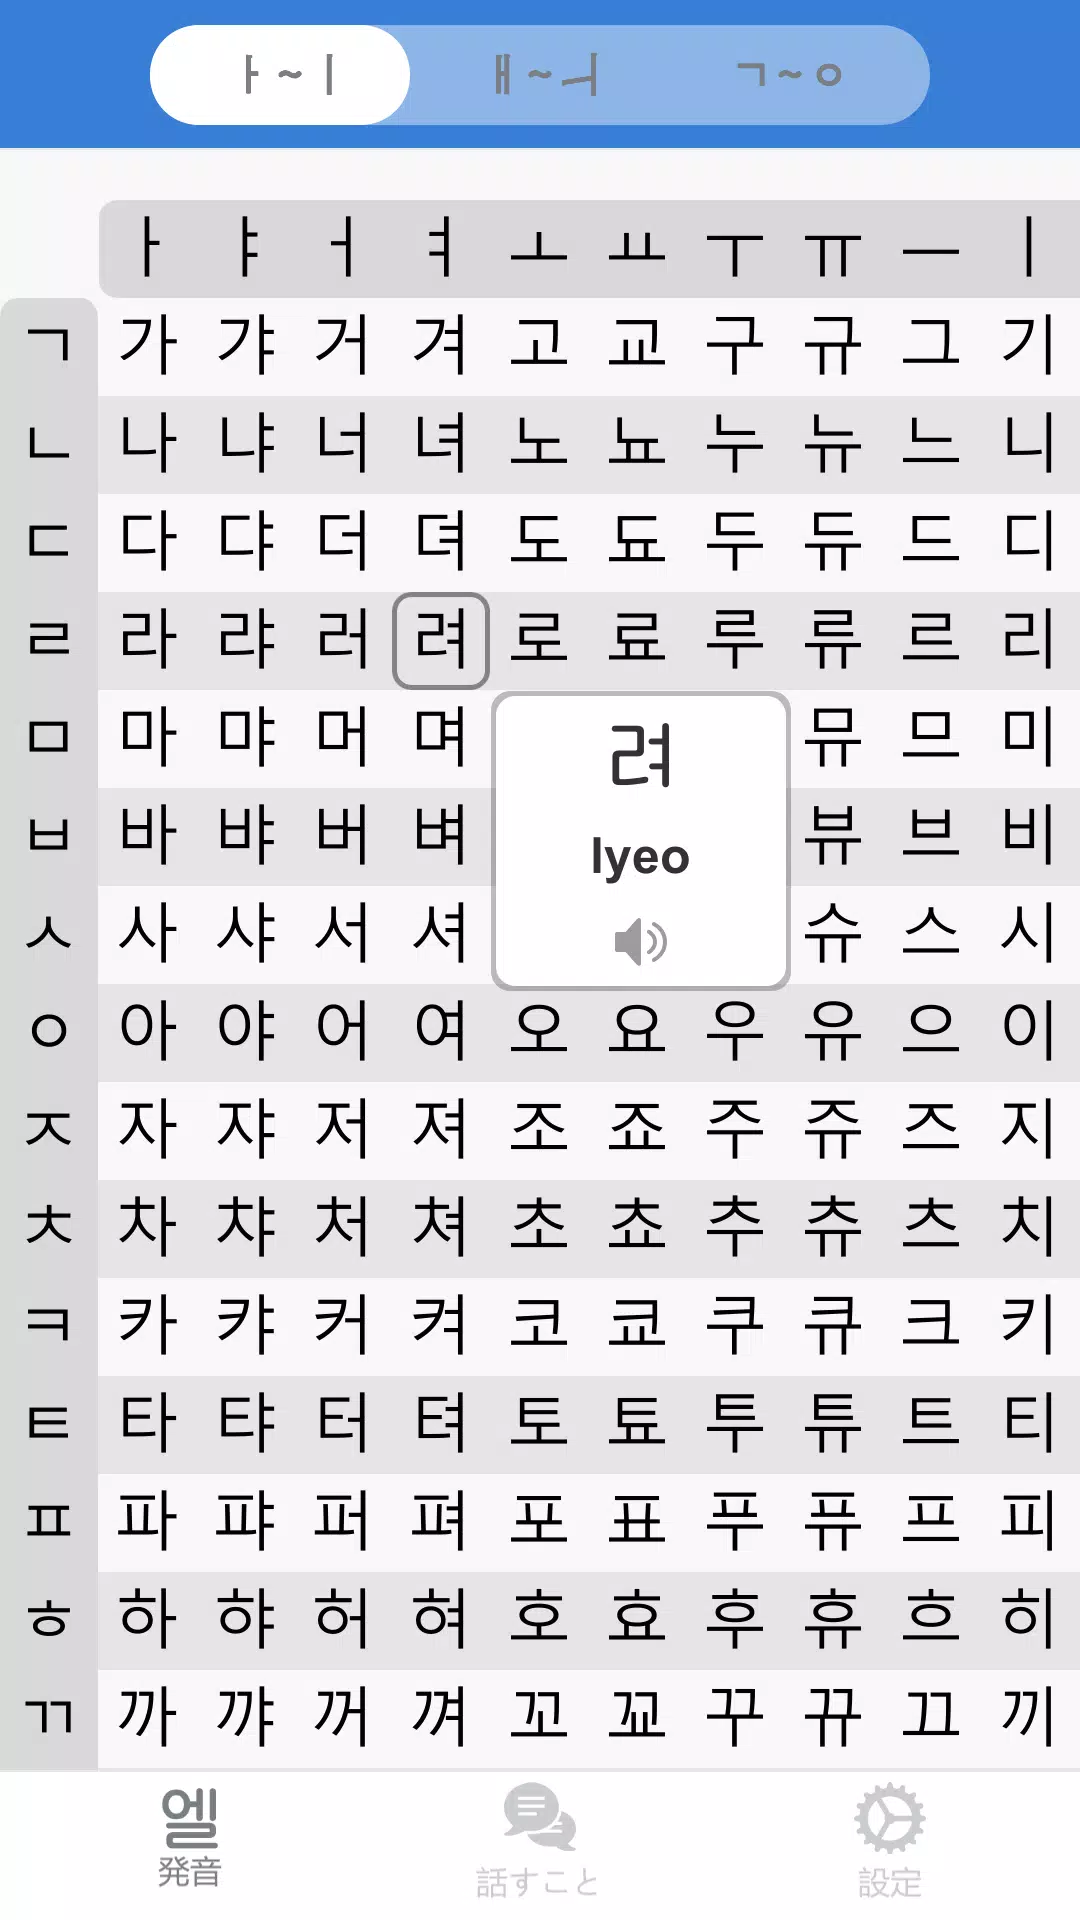 Android向けの韓国語アルファベット発音表 Pro 韓国語会話短い文章とレタ Apkをダウンロードしましょう